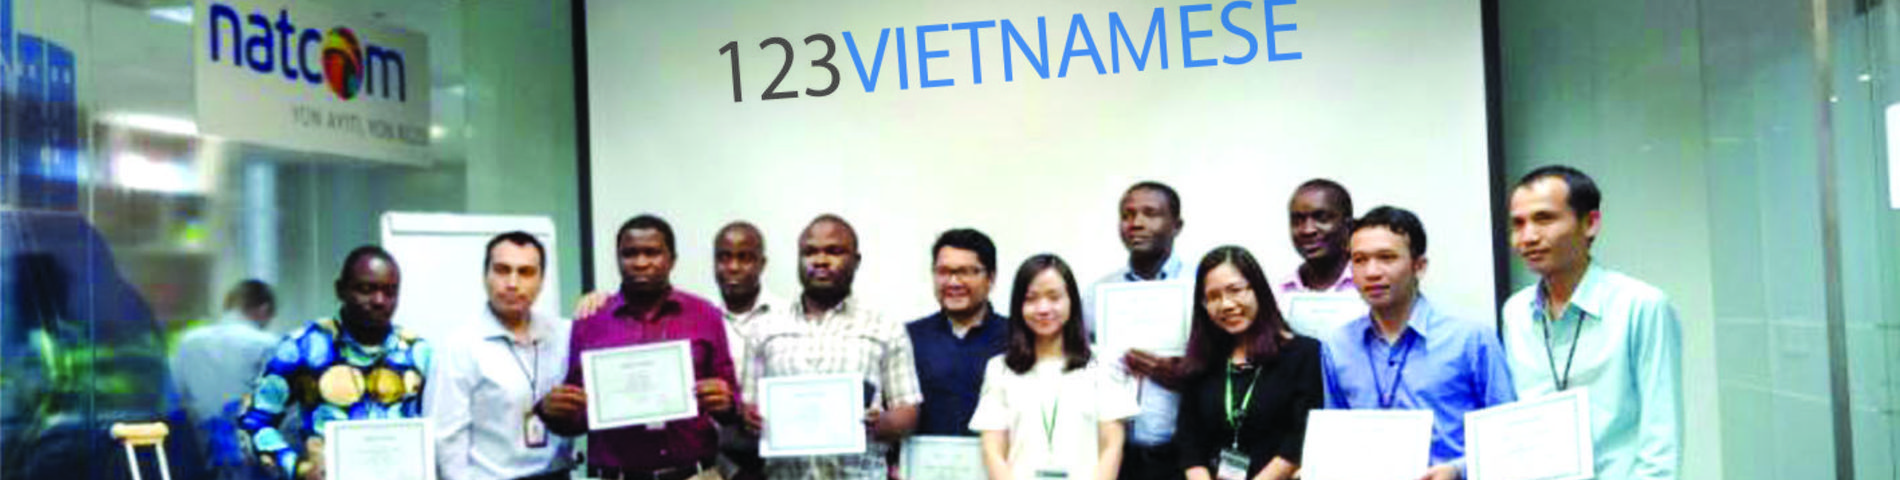 123 Vietnamese Center snímek 1	